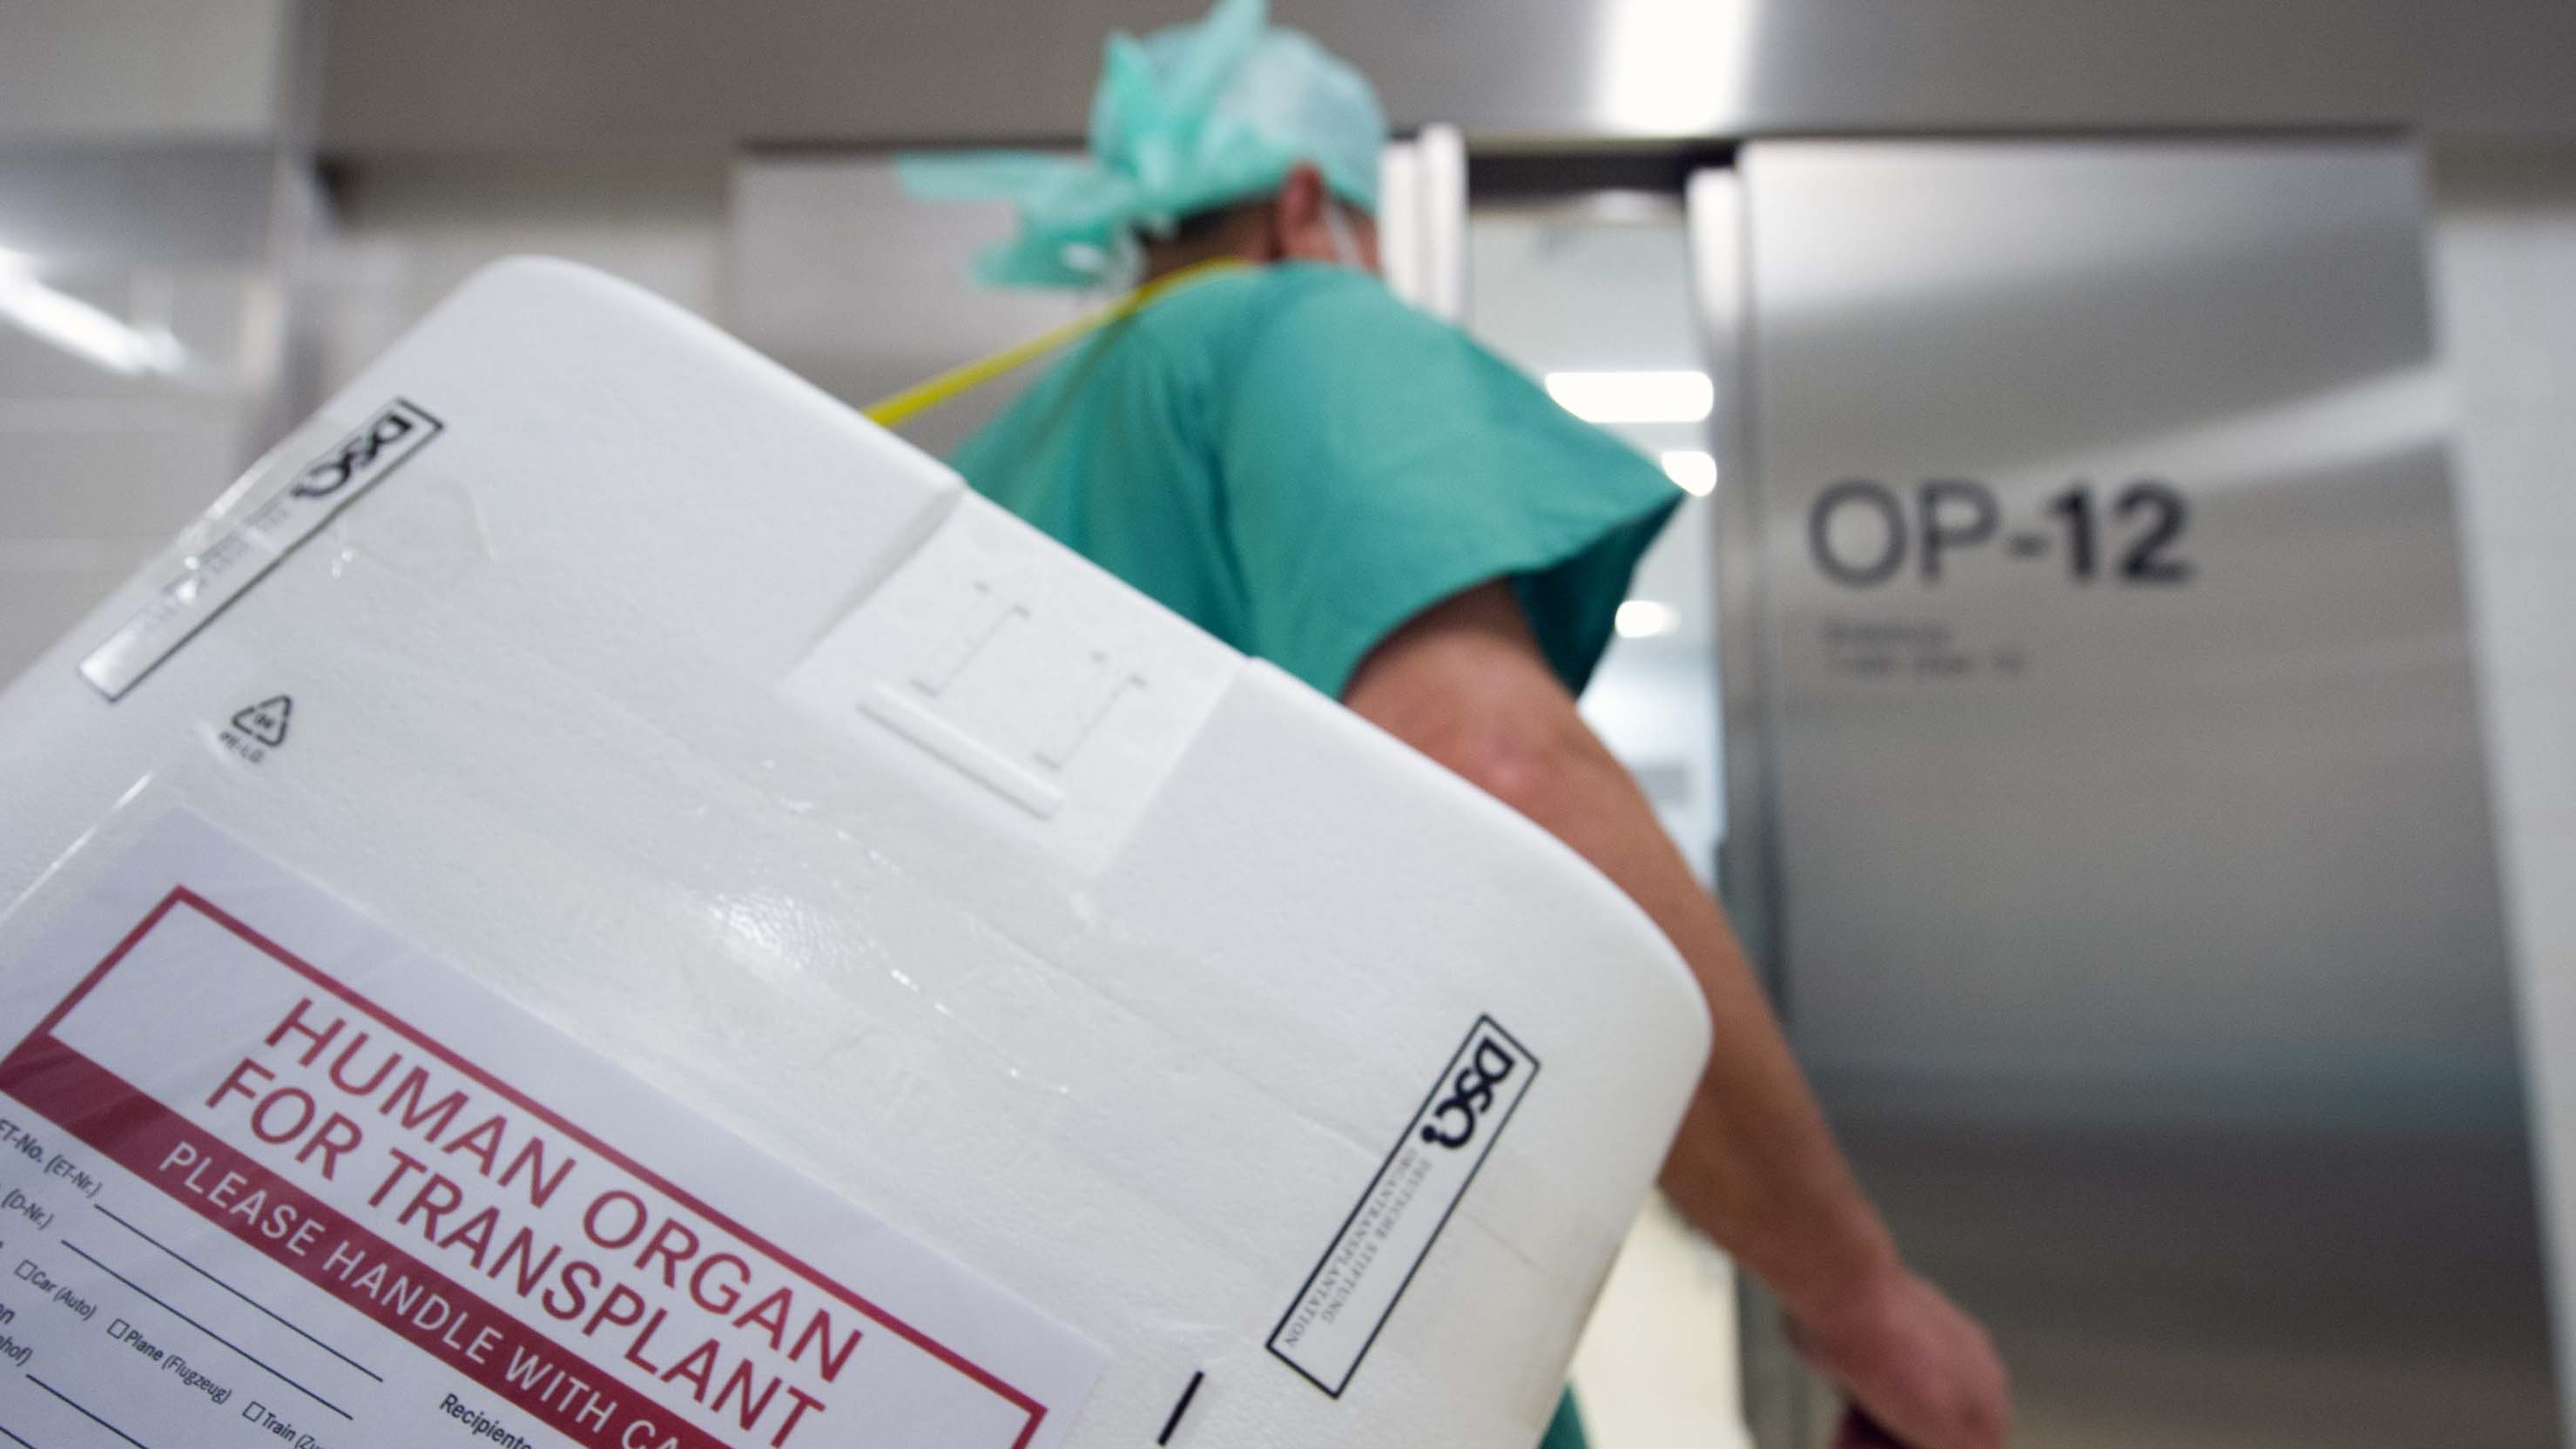 Behälter für den Transport von menschlichen Organen | dpa